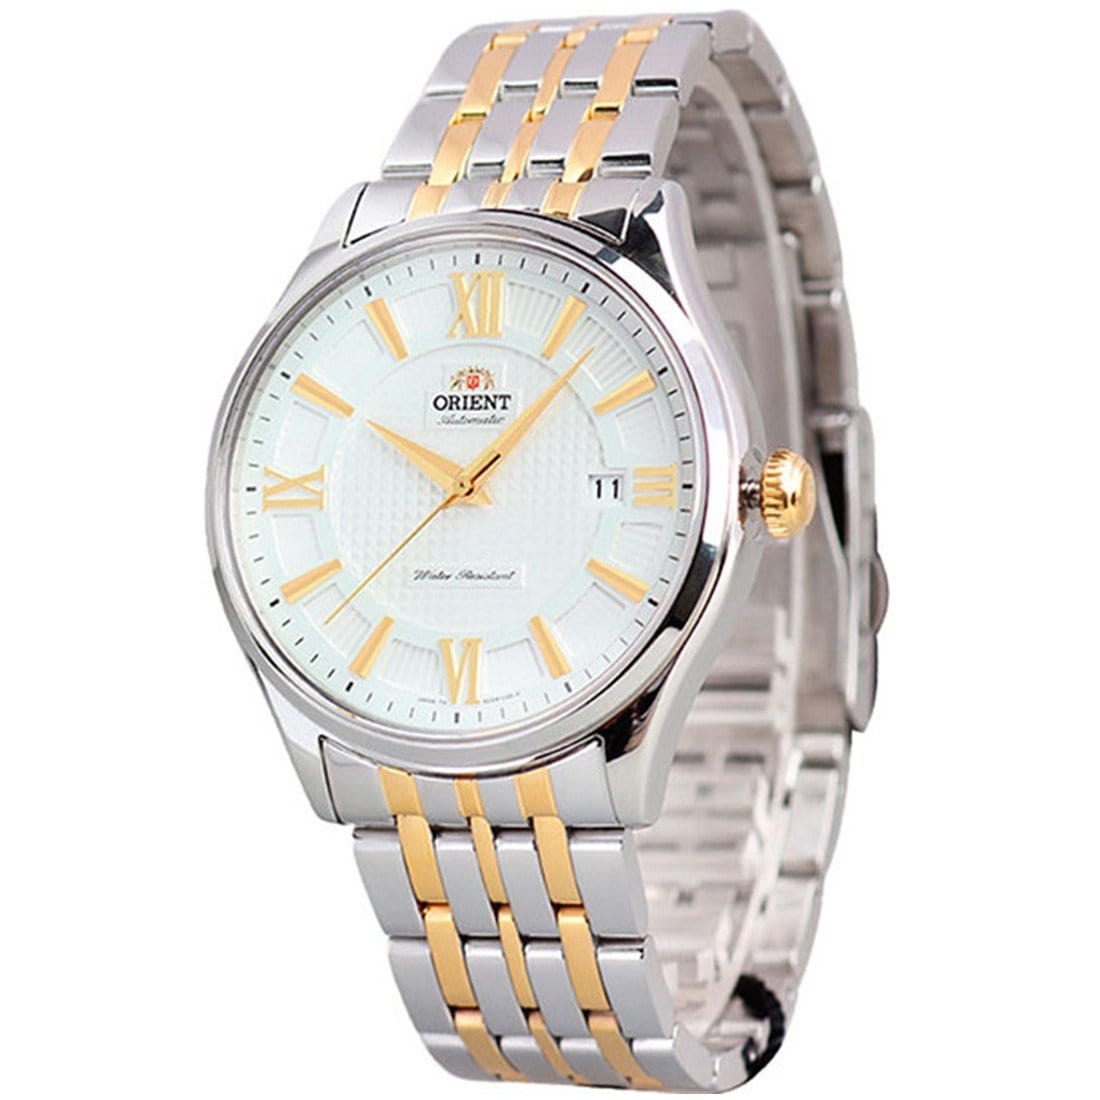 Orient Automatic Male Watch SAC04002W0 AC04002W